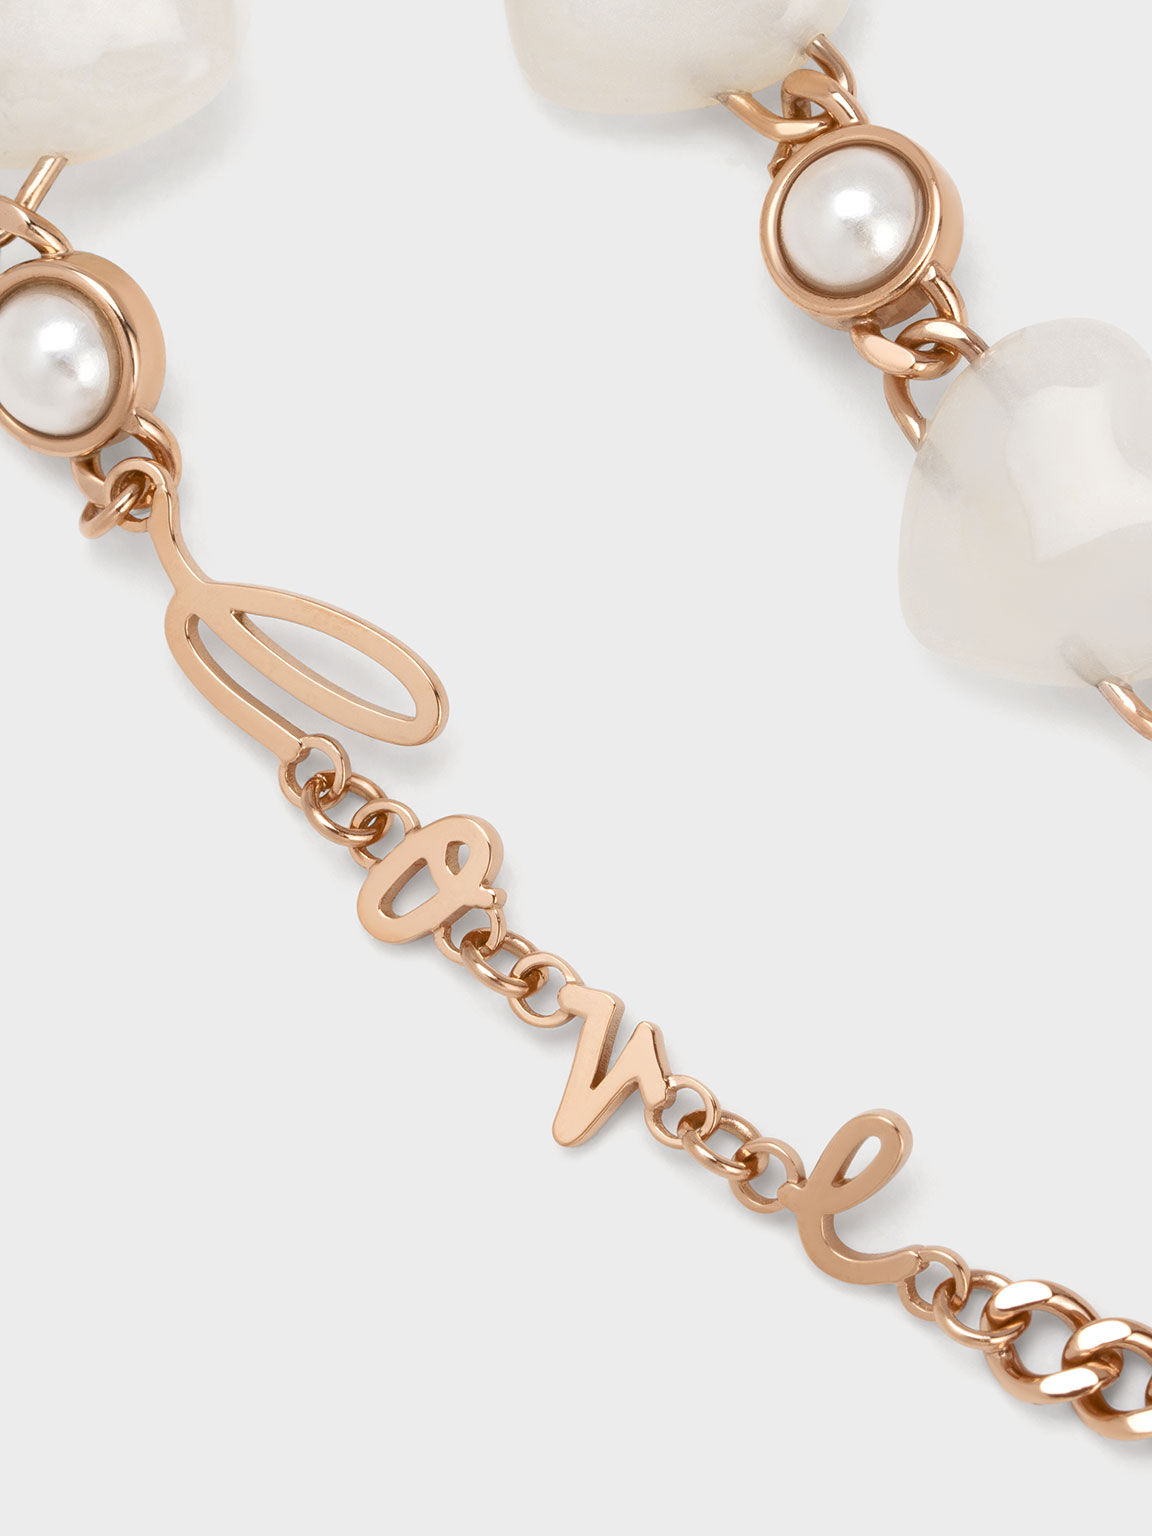 Heart Motif Embellished Bracelet, Gold, hi-res